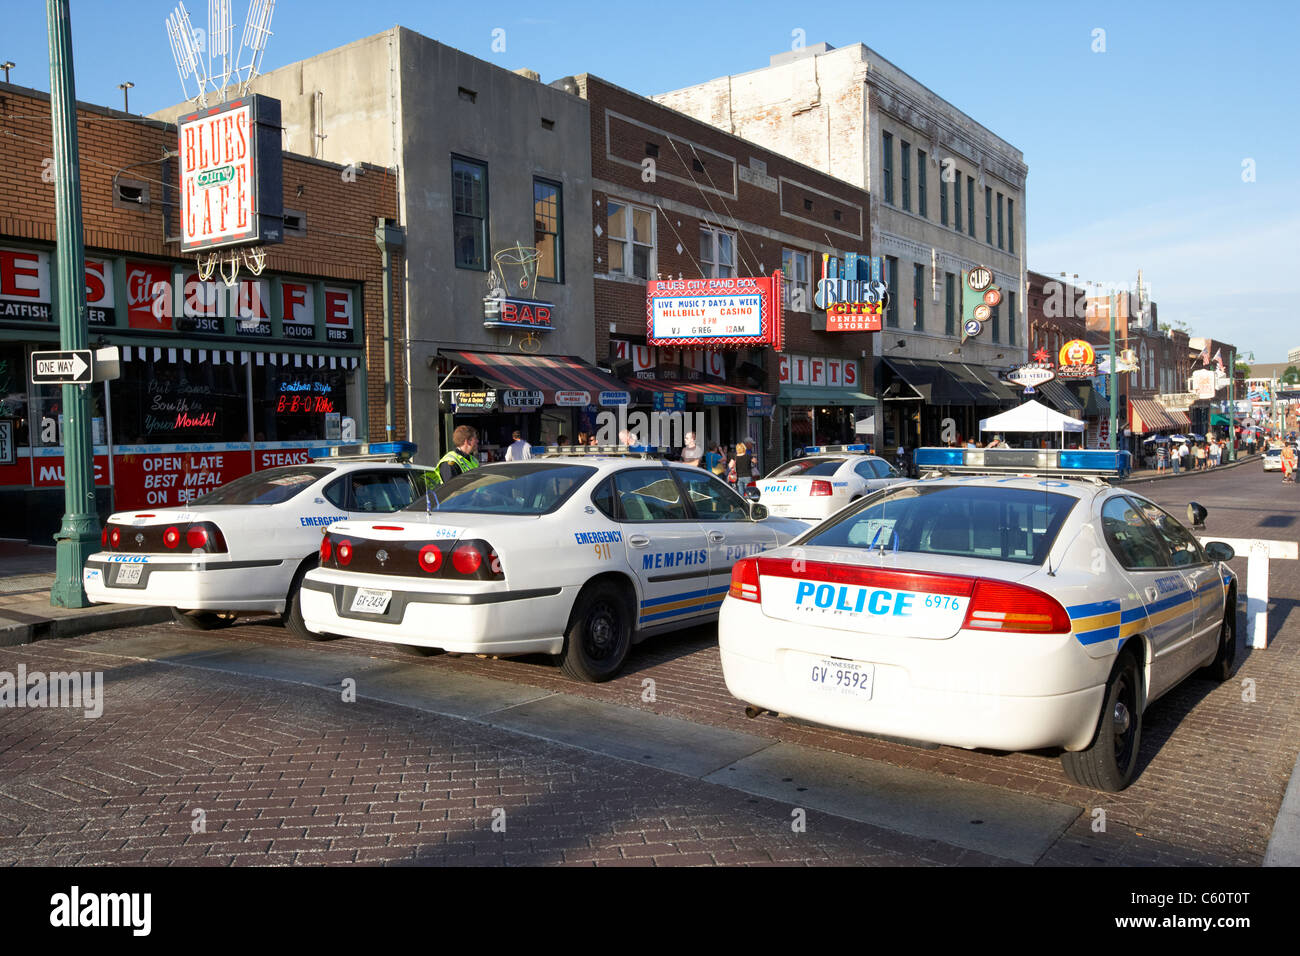 La patrouille de la police de memphis voitures garées à l'entrée de Beale street offrant une protection visible pour les touristes Memphis Tennessee united states america usa Banque D'Images